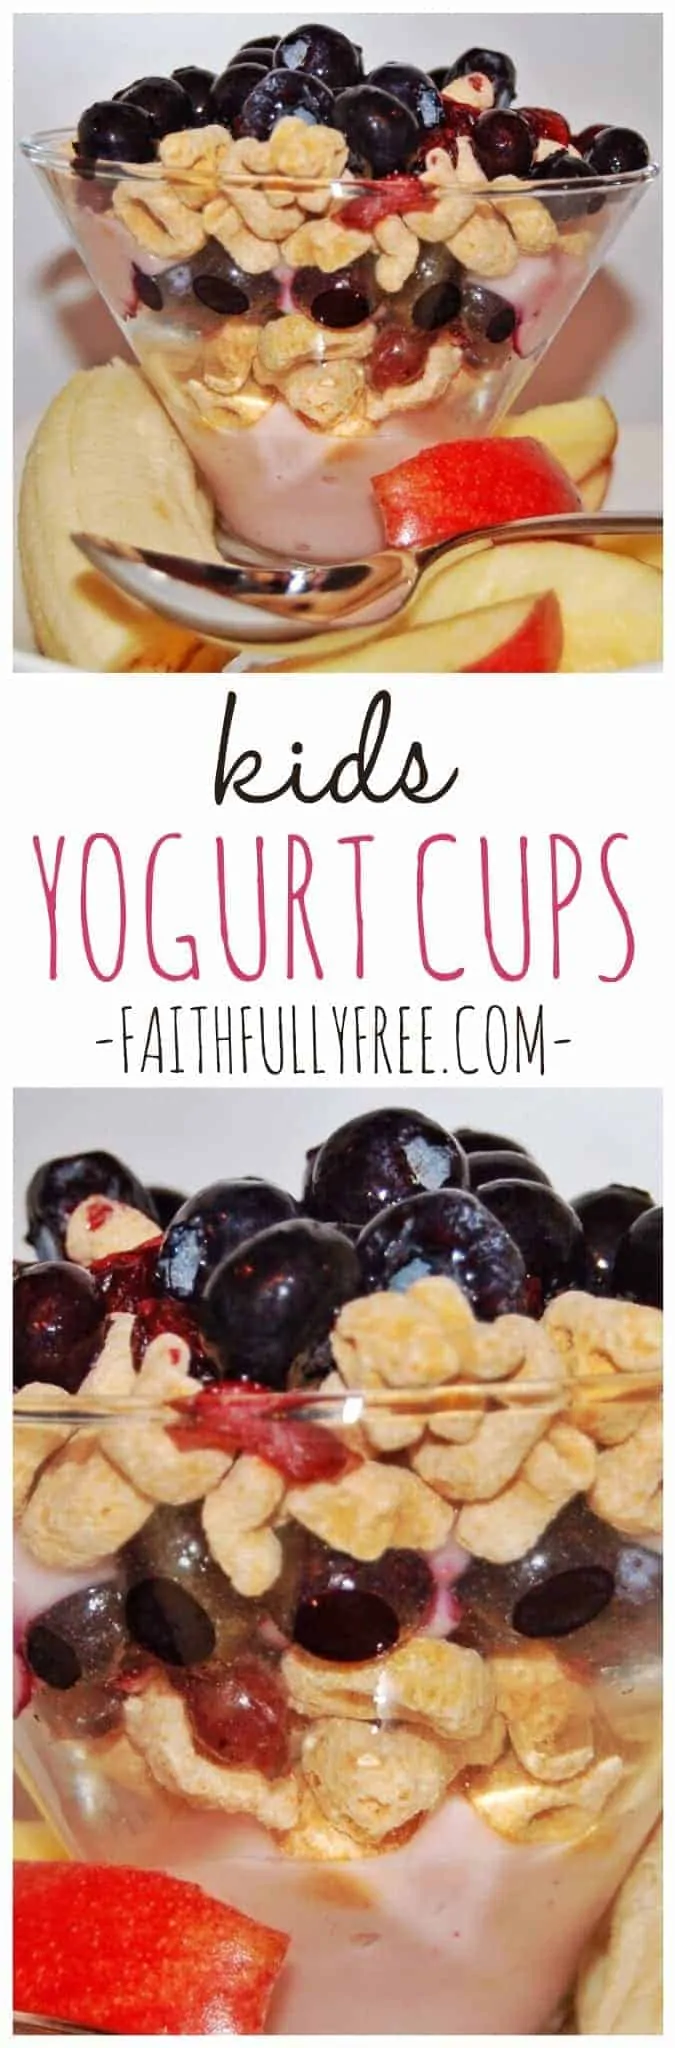 Kid's Yogurt Cups Recipe